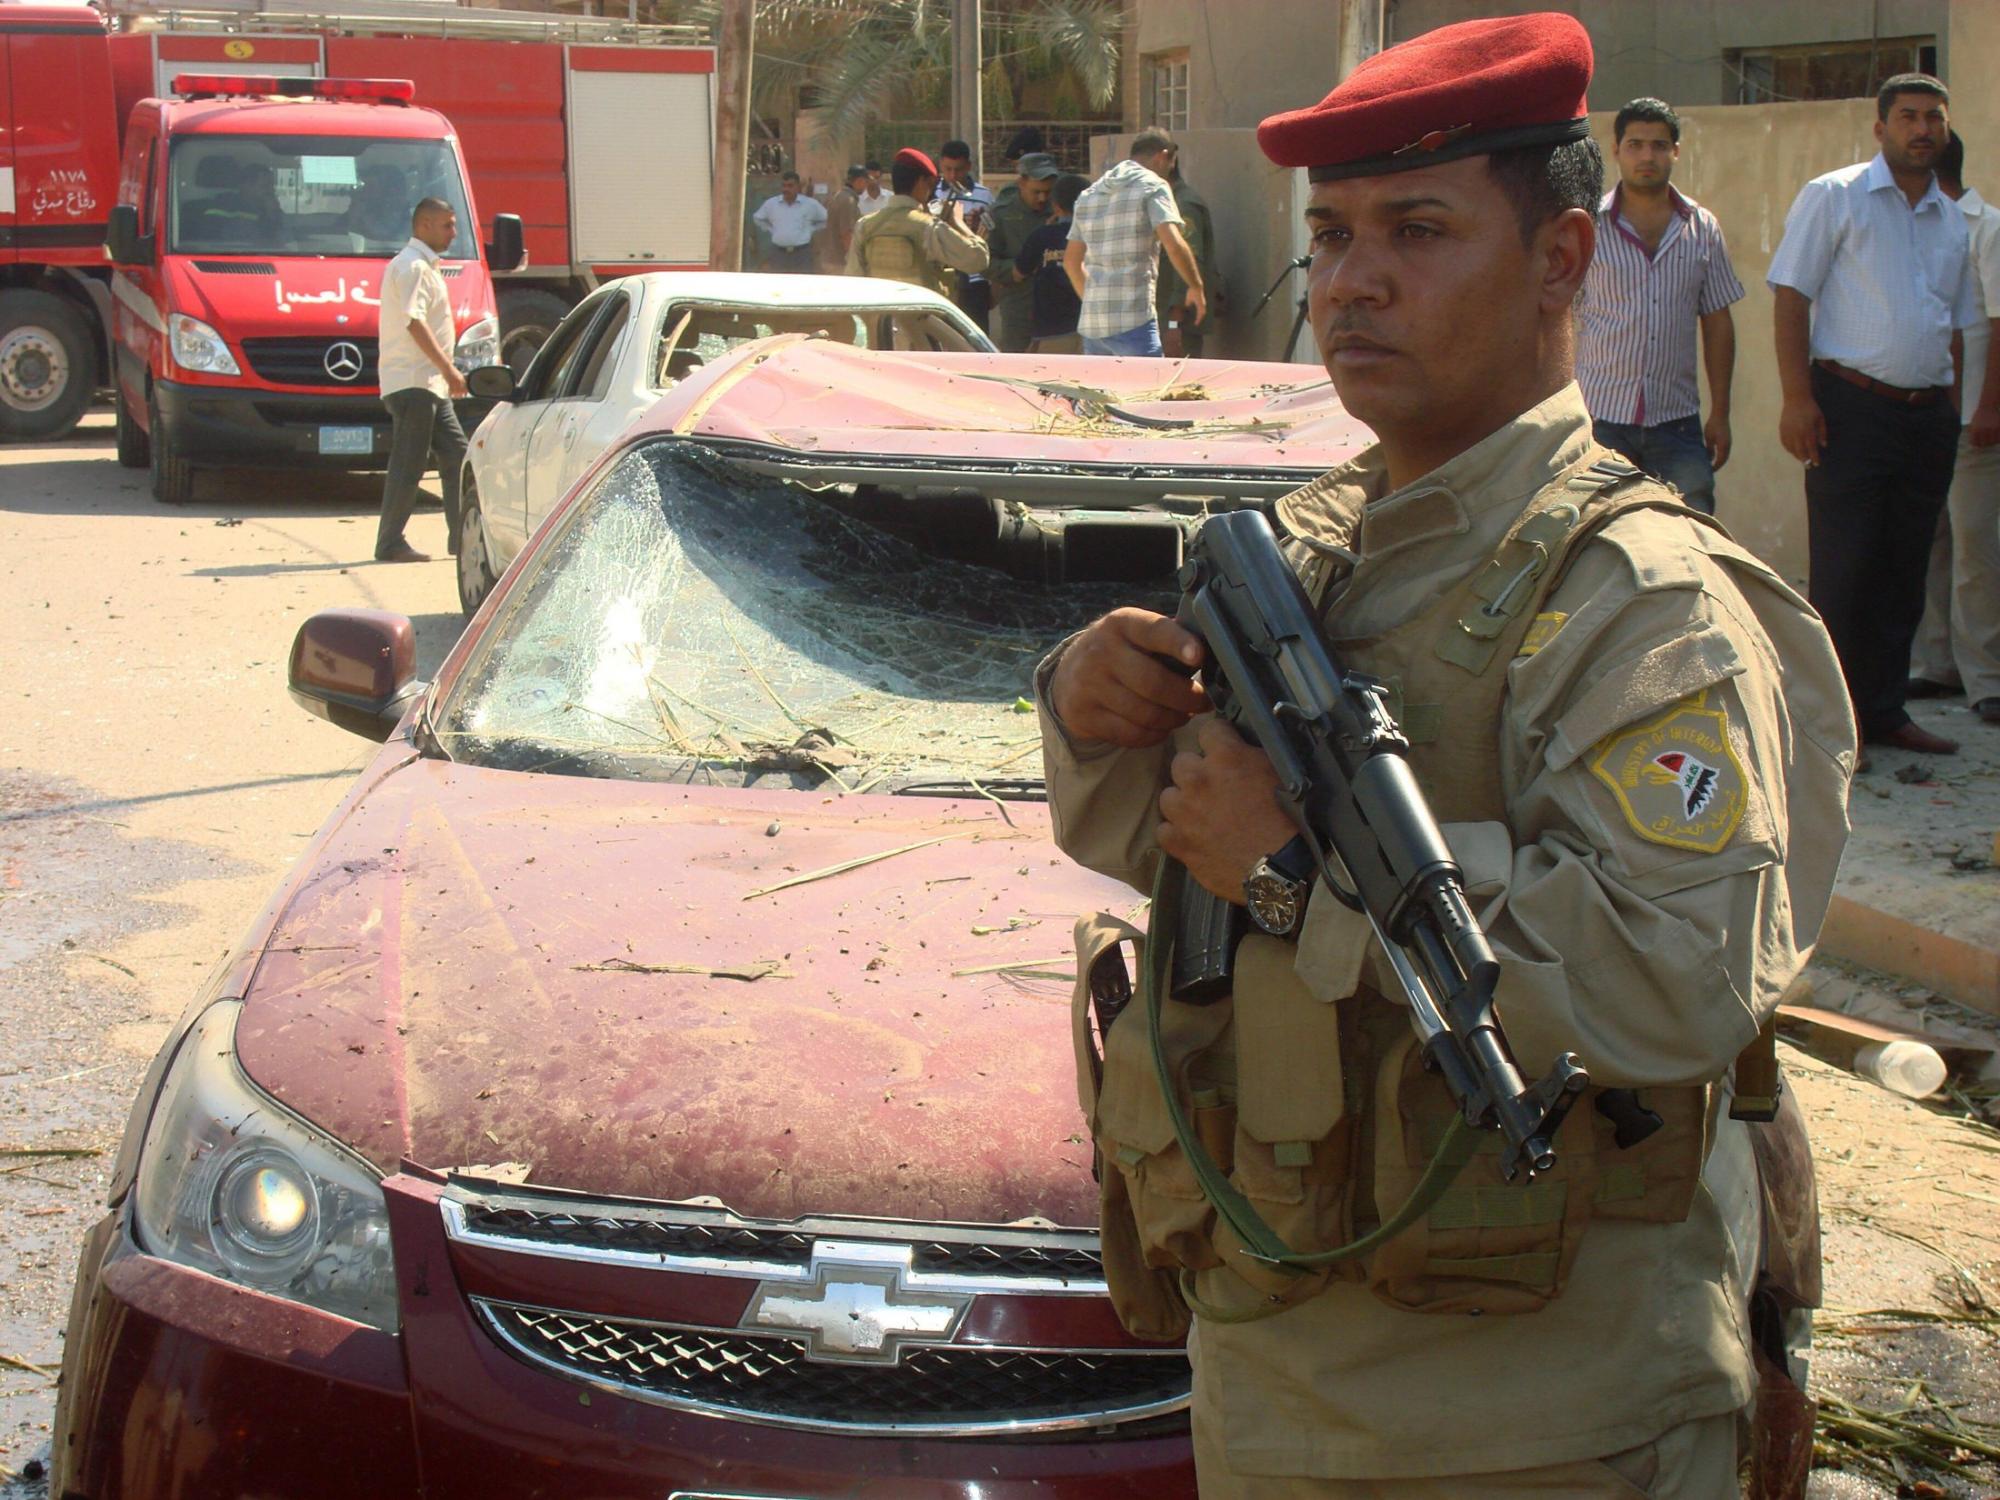 伊拉克一省长家外两起爆炸致死25人 暴力频仍使美军去留成难题